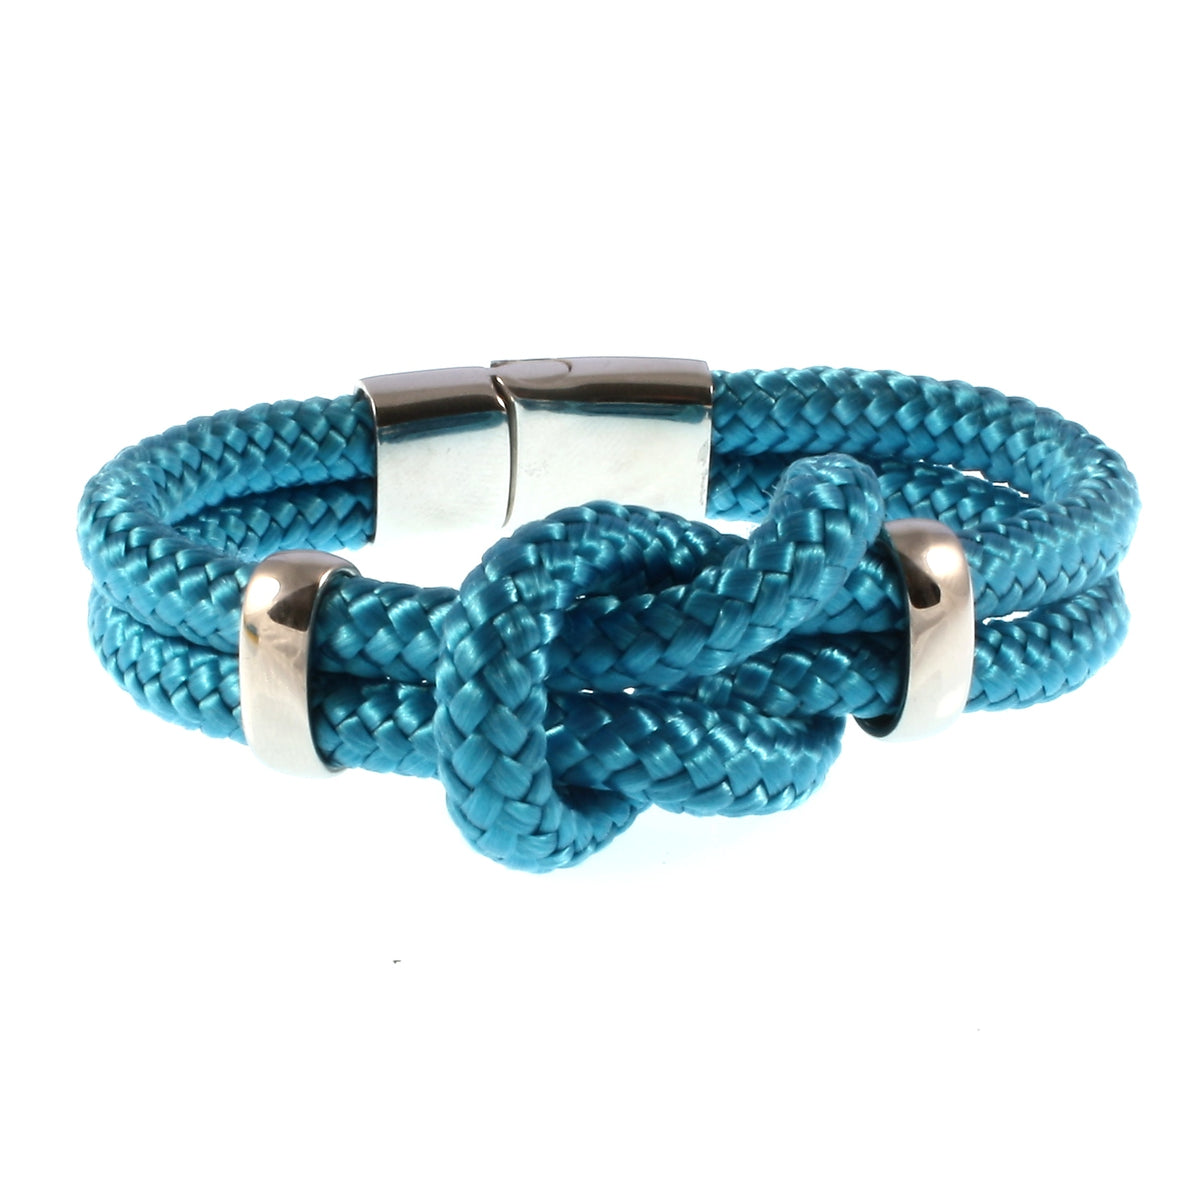 Damen-Segeltau-armband-pure-blau-silber-geflochten-Edelstahlverschluss-vorn-wavepirate-shop-st